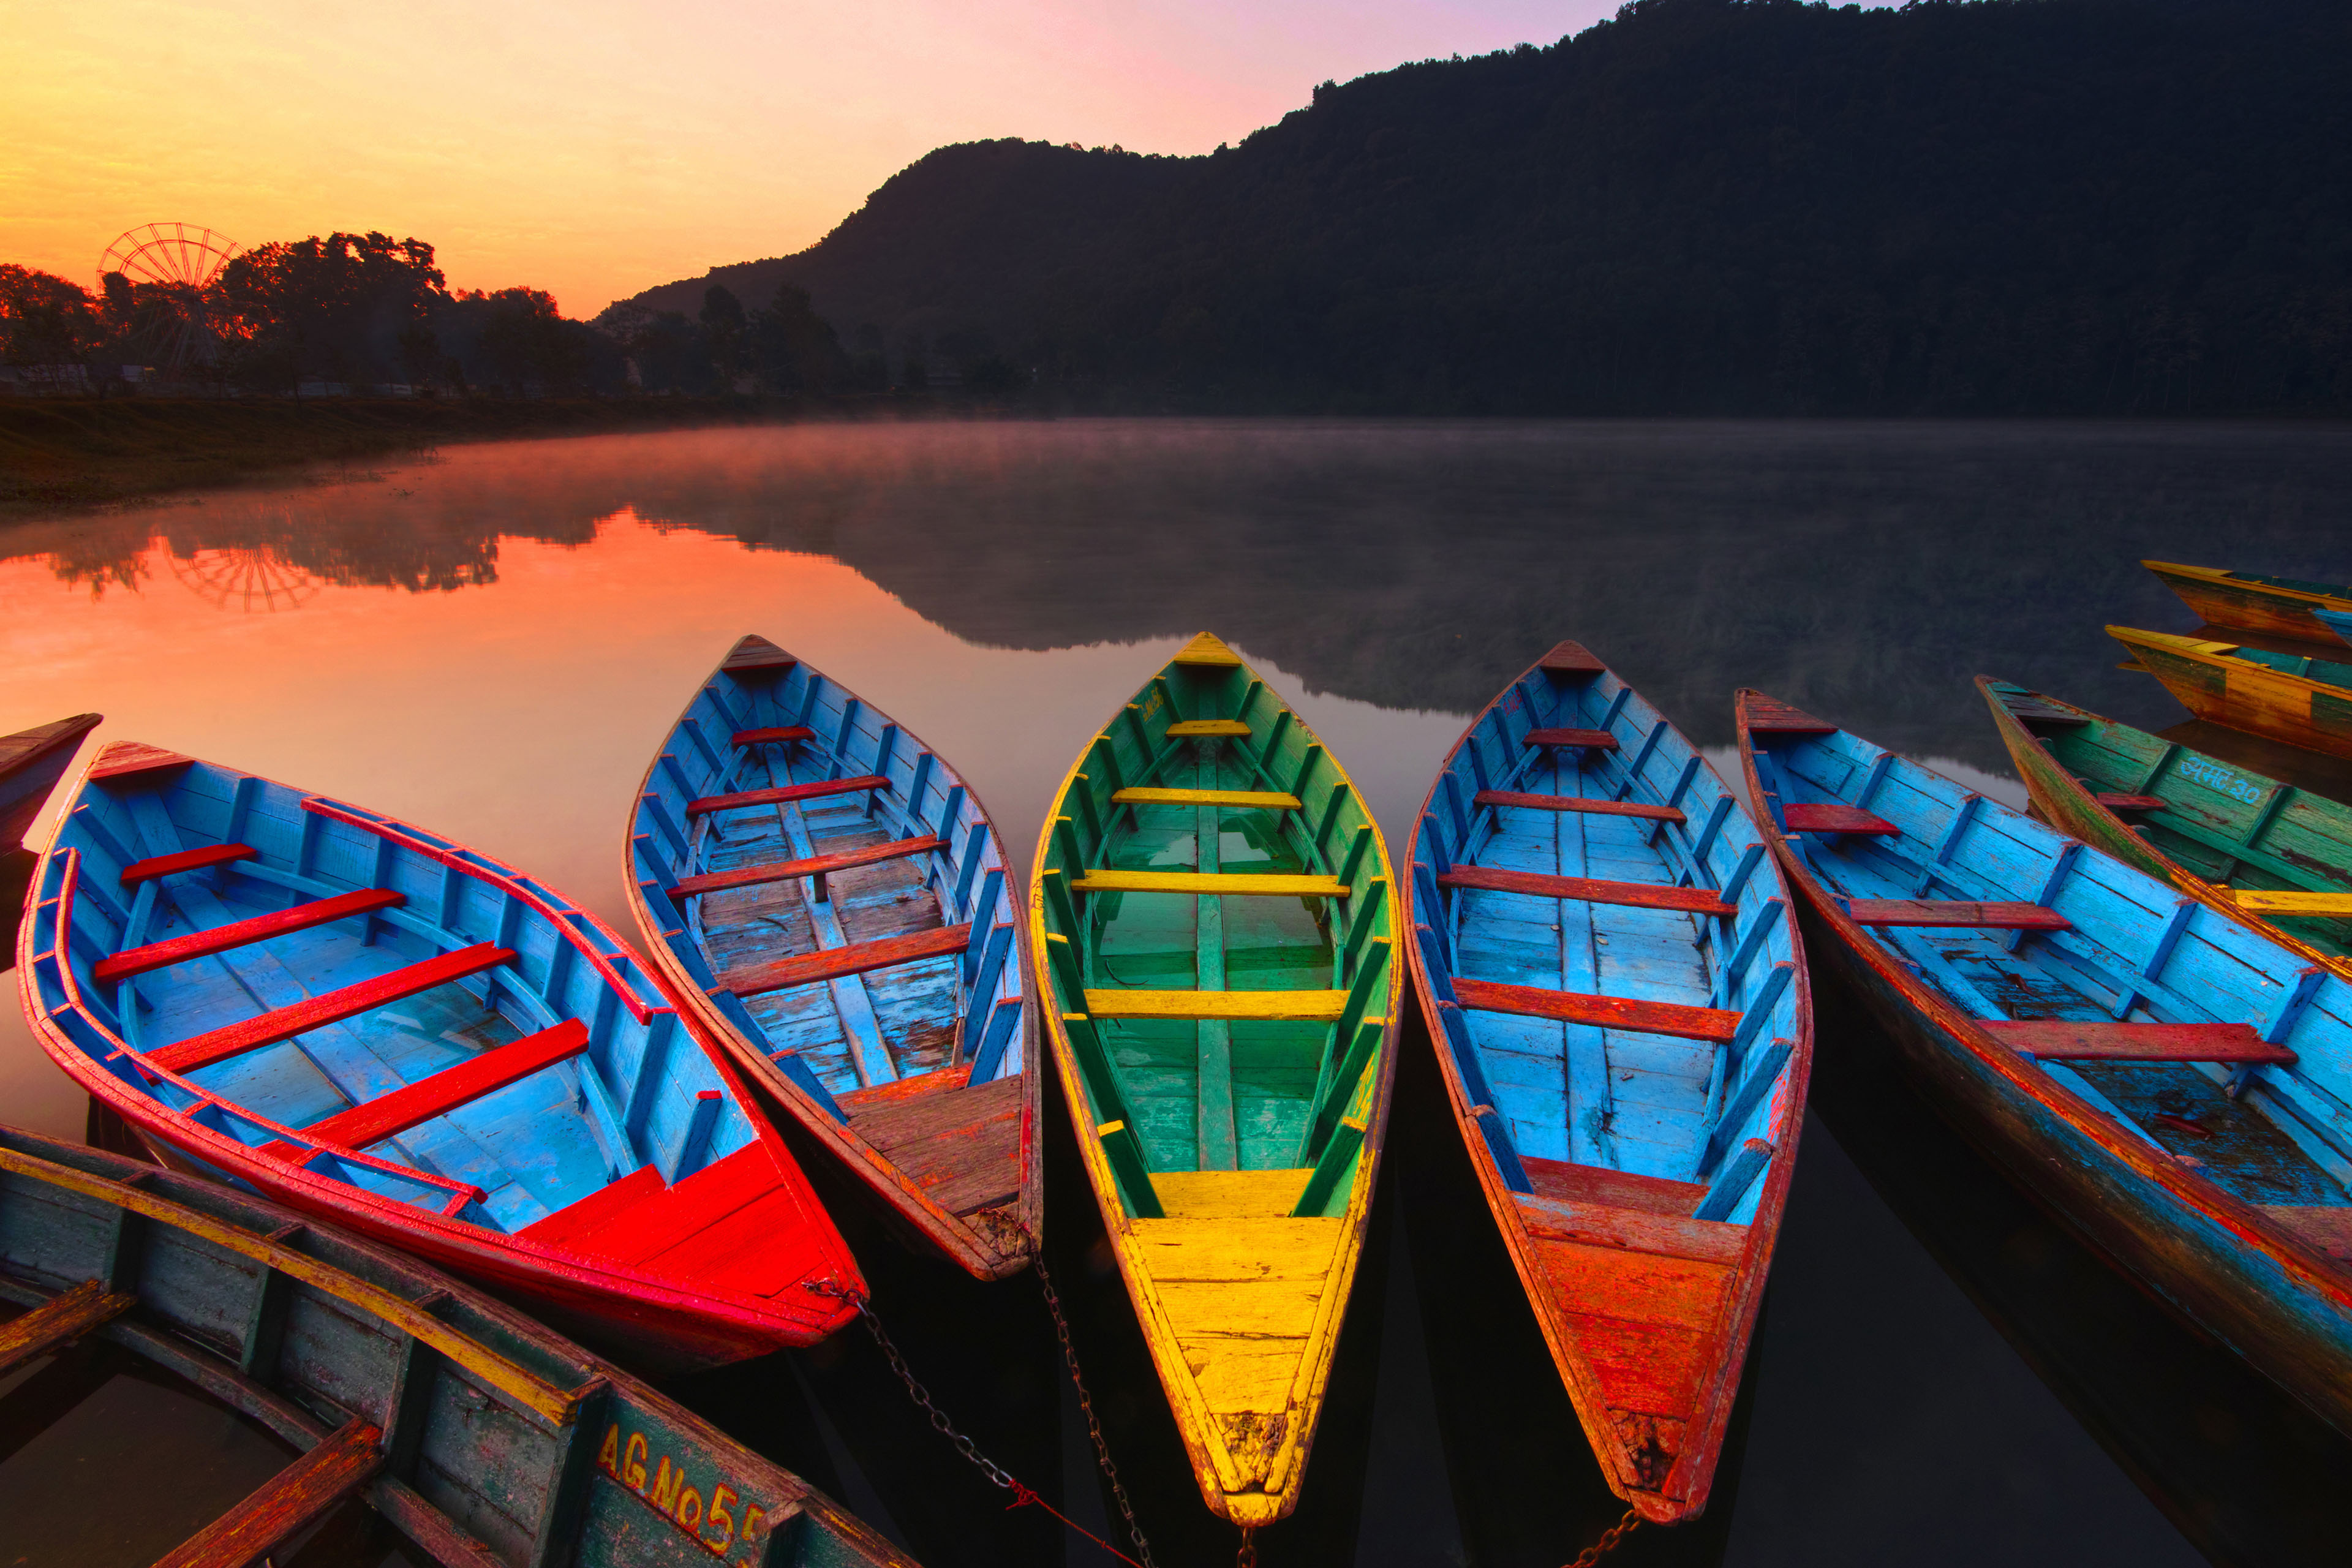 費瓦湖 (Phewan Lake)上的彩色小船及日出圖像